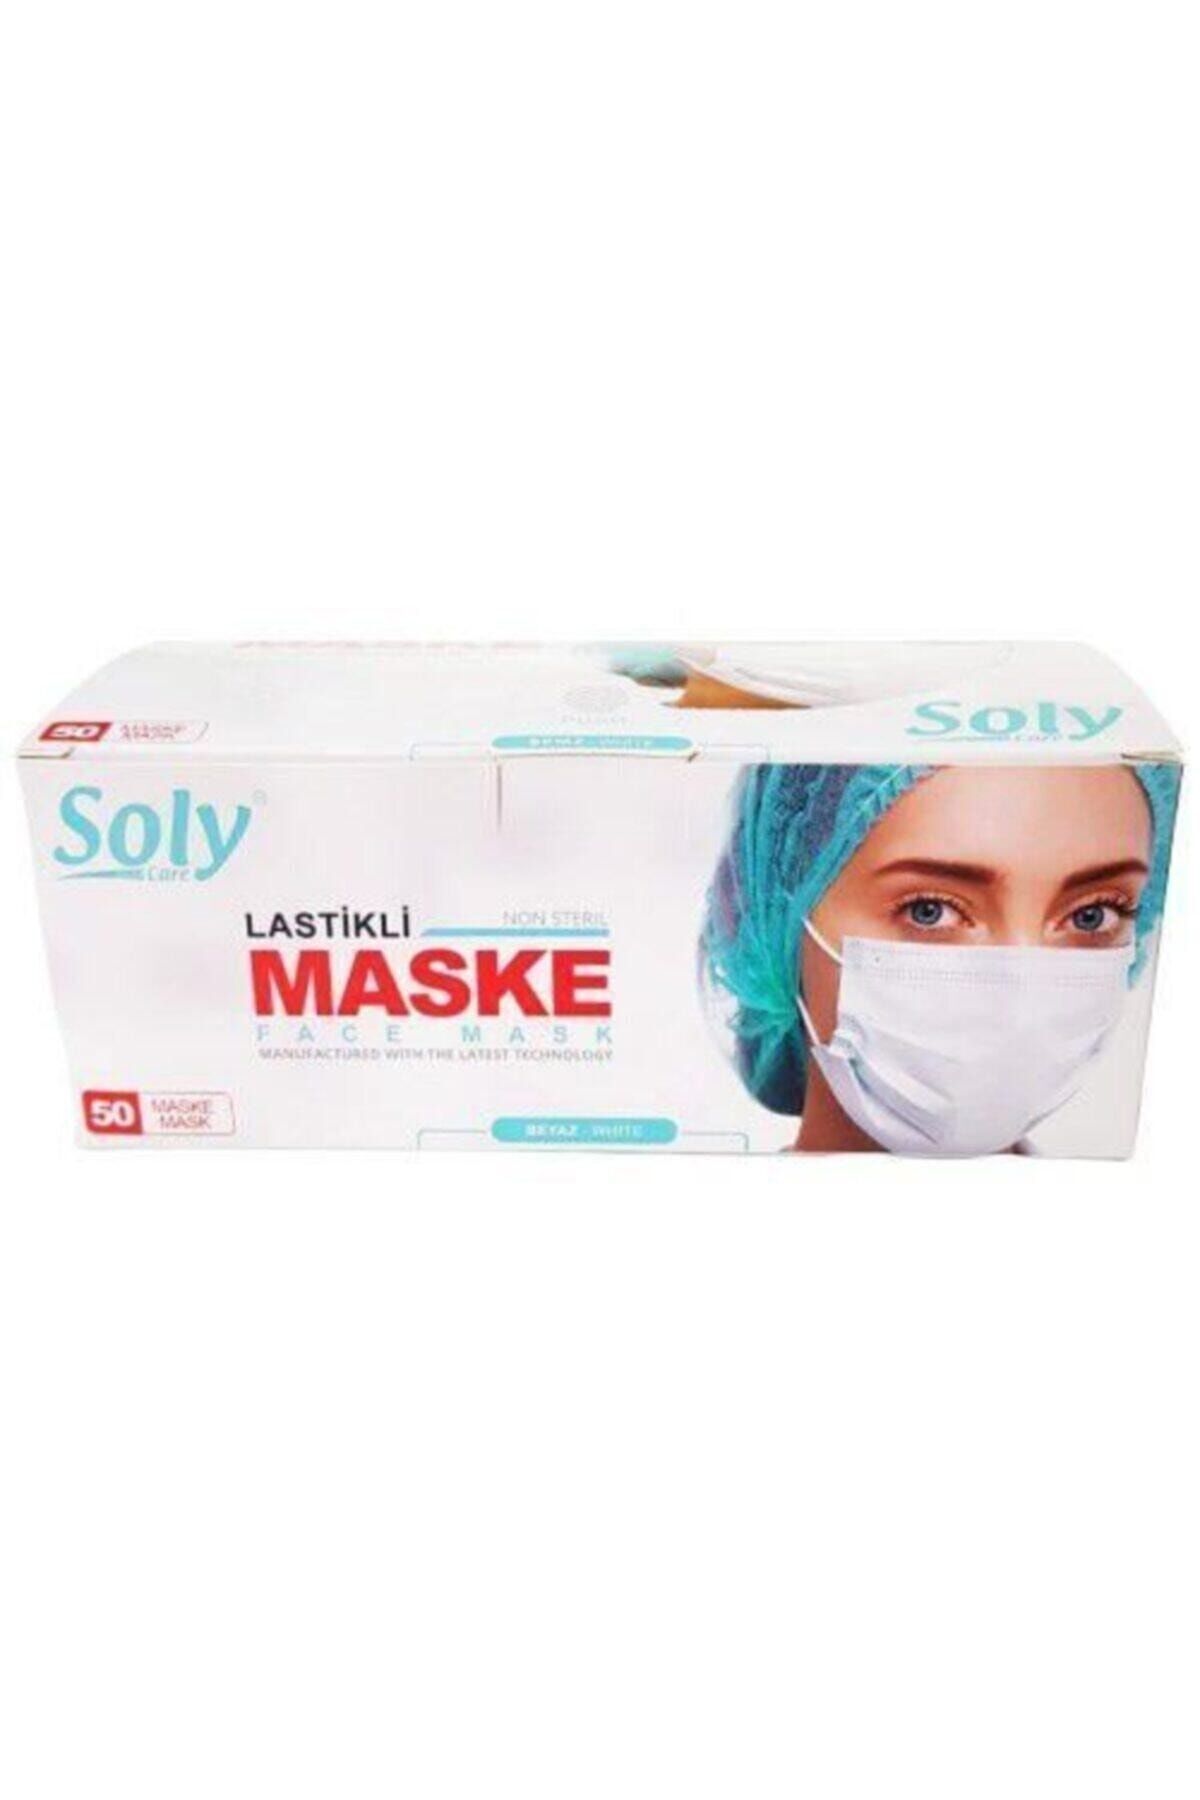 Soly "beyaz" Care Cerrahi Maske 800 Adet (50'li 16 Kutu) Üç Katlı Lastikli Burun Telli